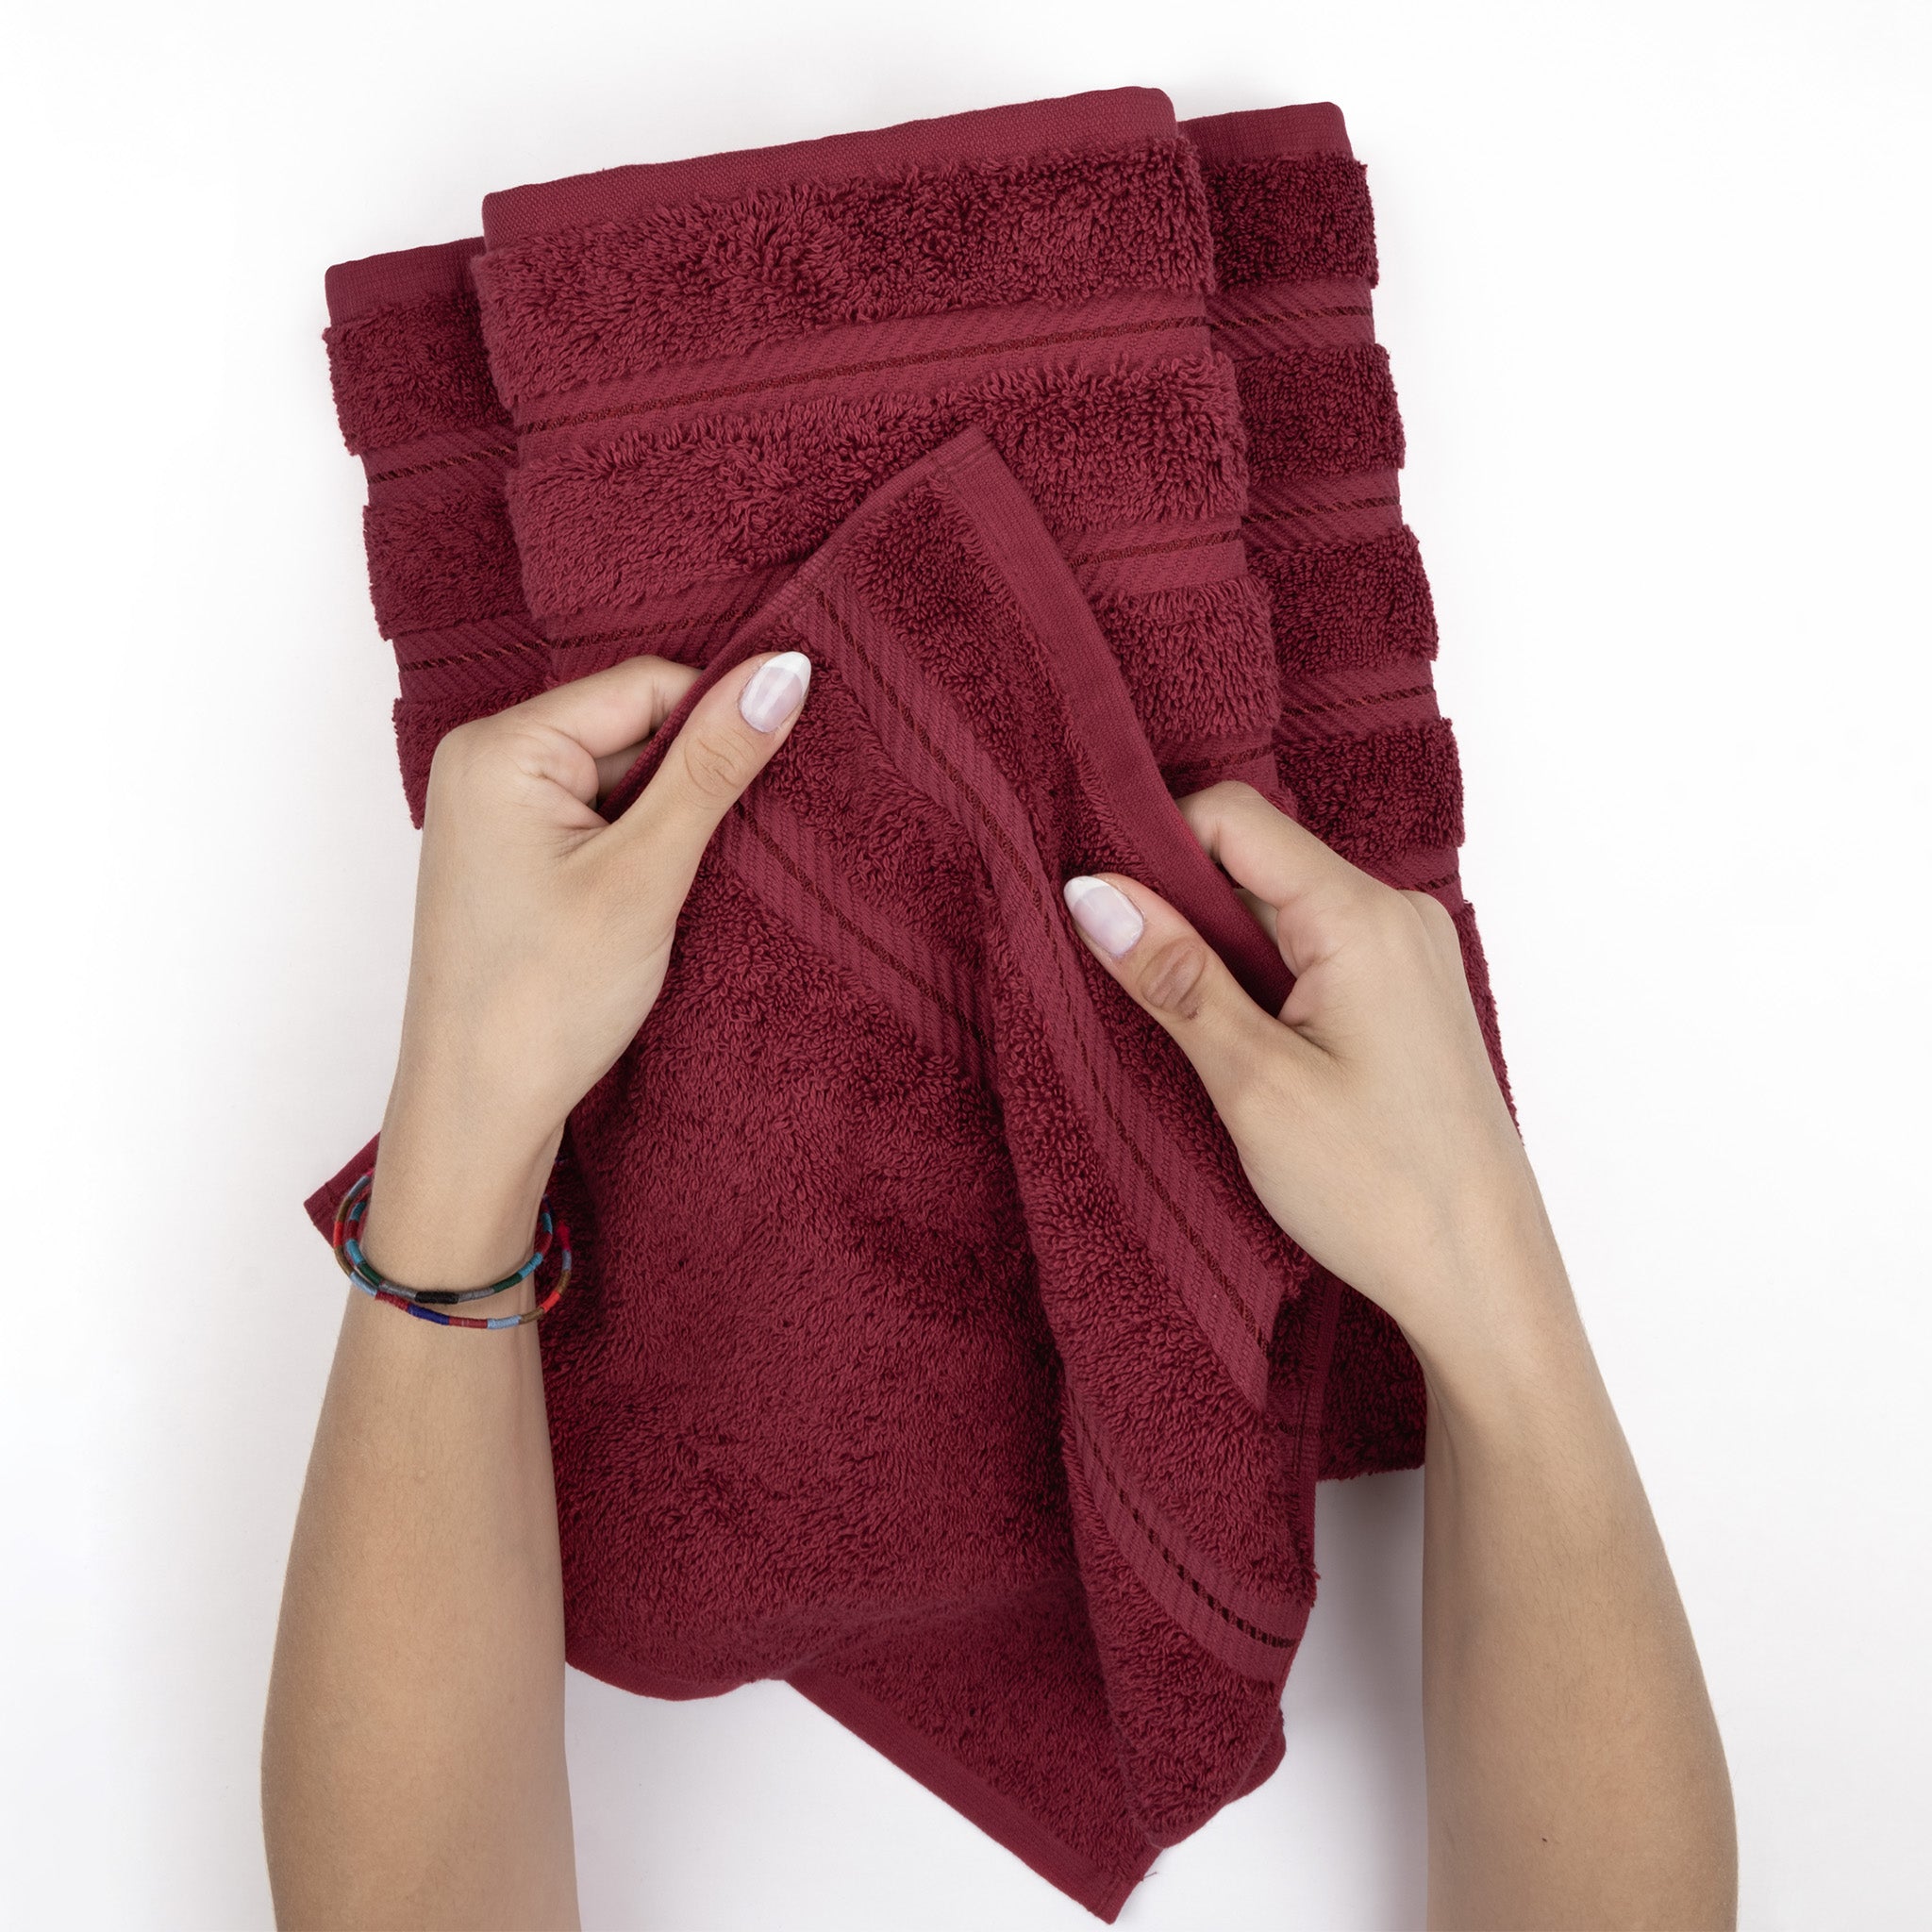 American Soft Linen 3 Piece Luxury Hotel Towel Set 20 set case pack bordeaux-red-5